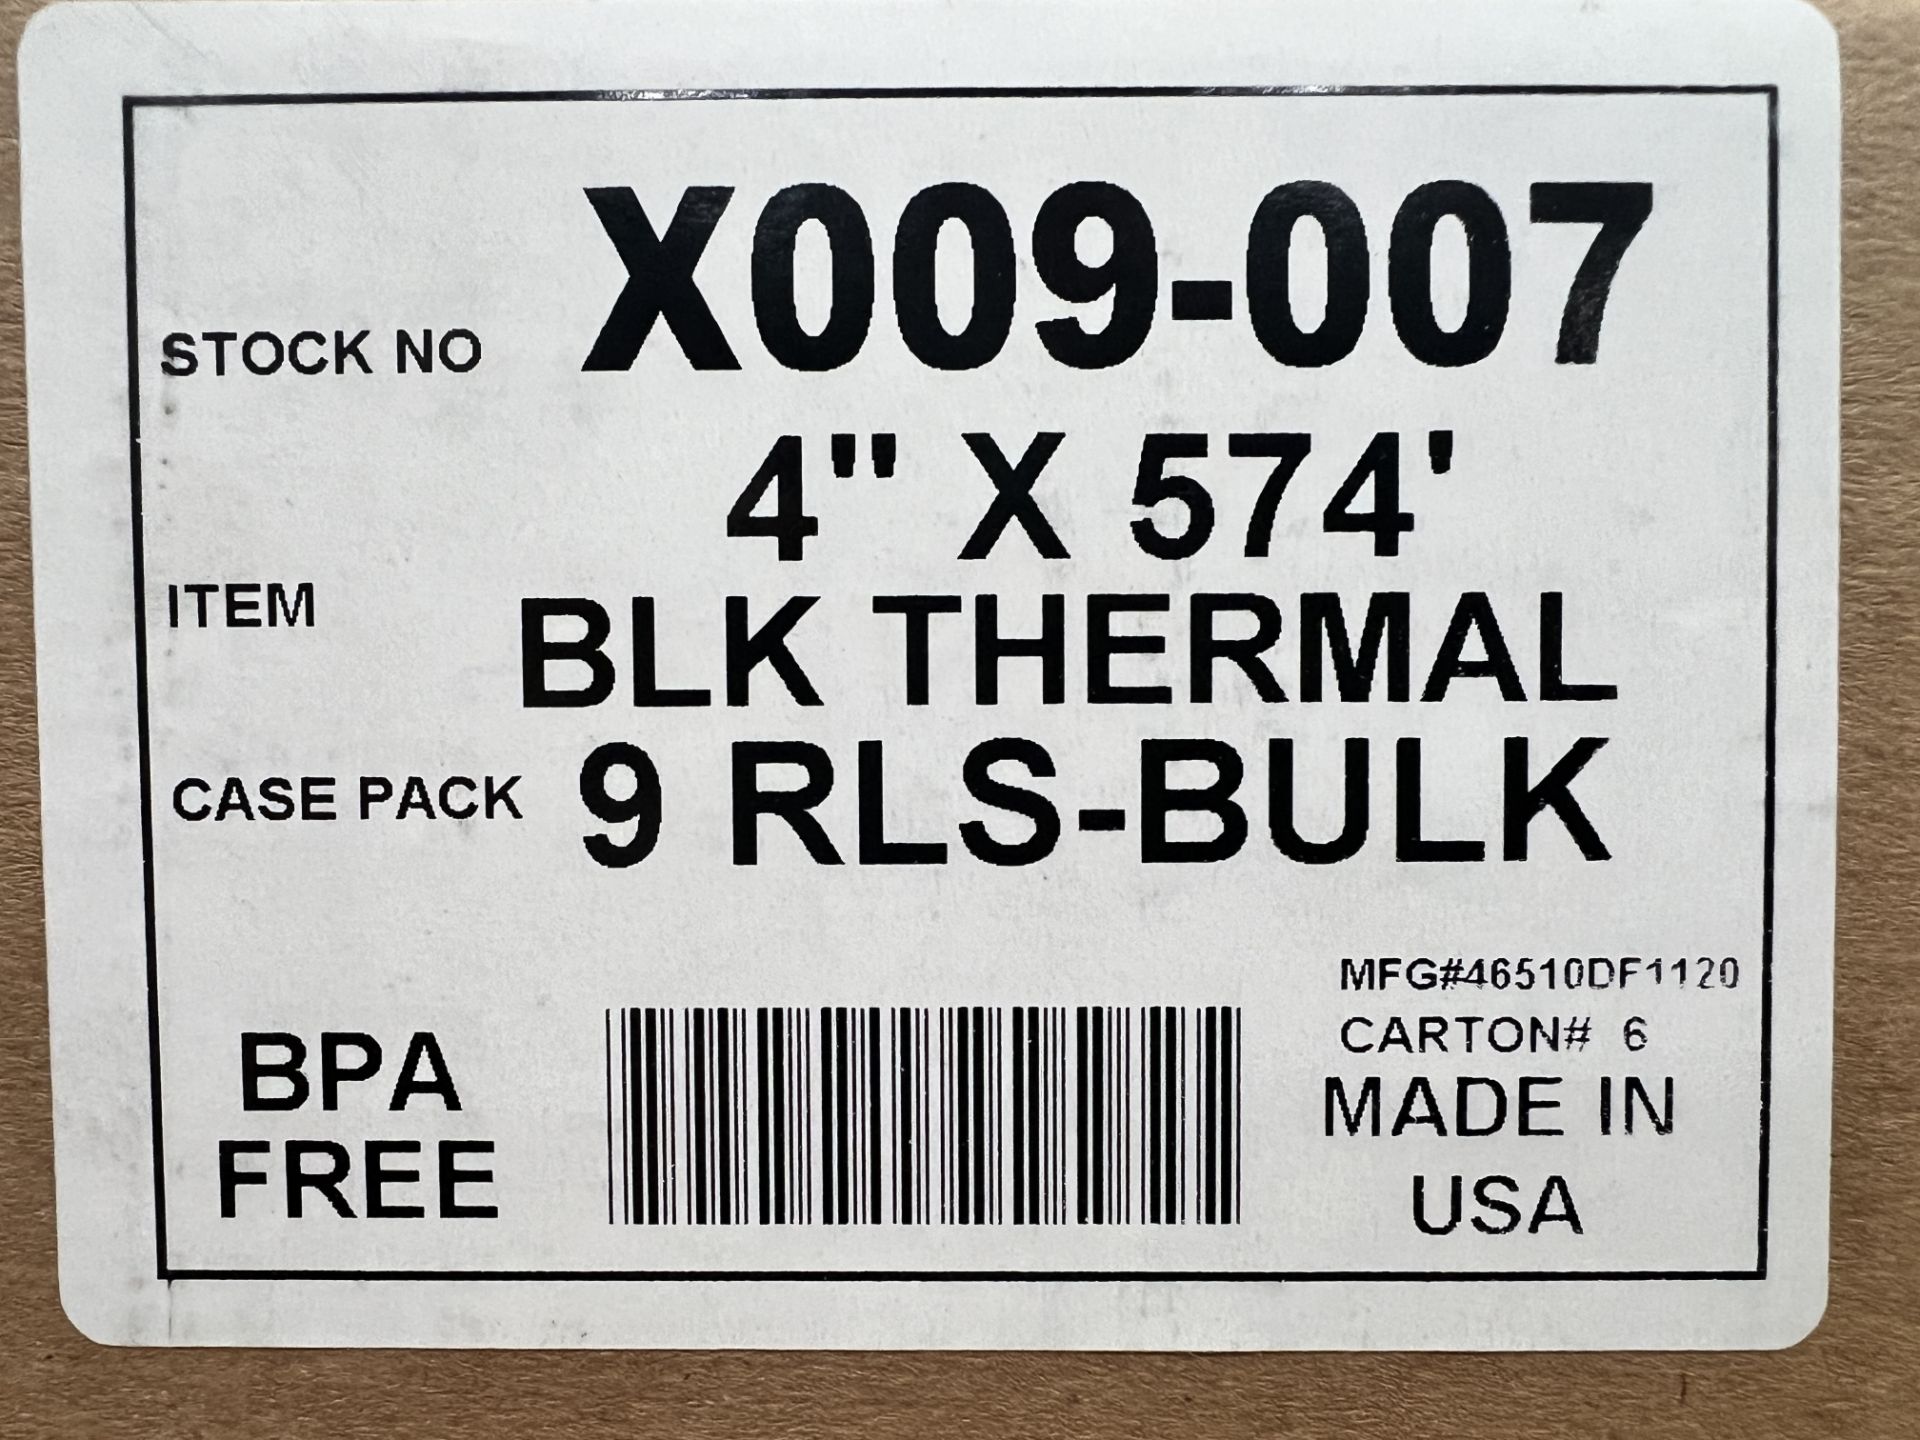 Bulk Thermal Labels 4" x 574' - Image 3 of 4